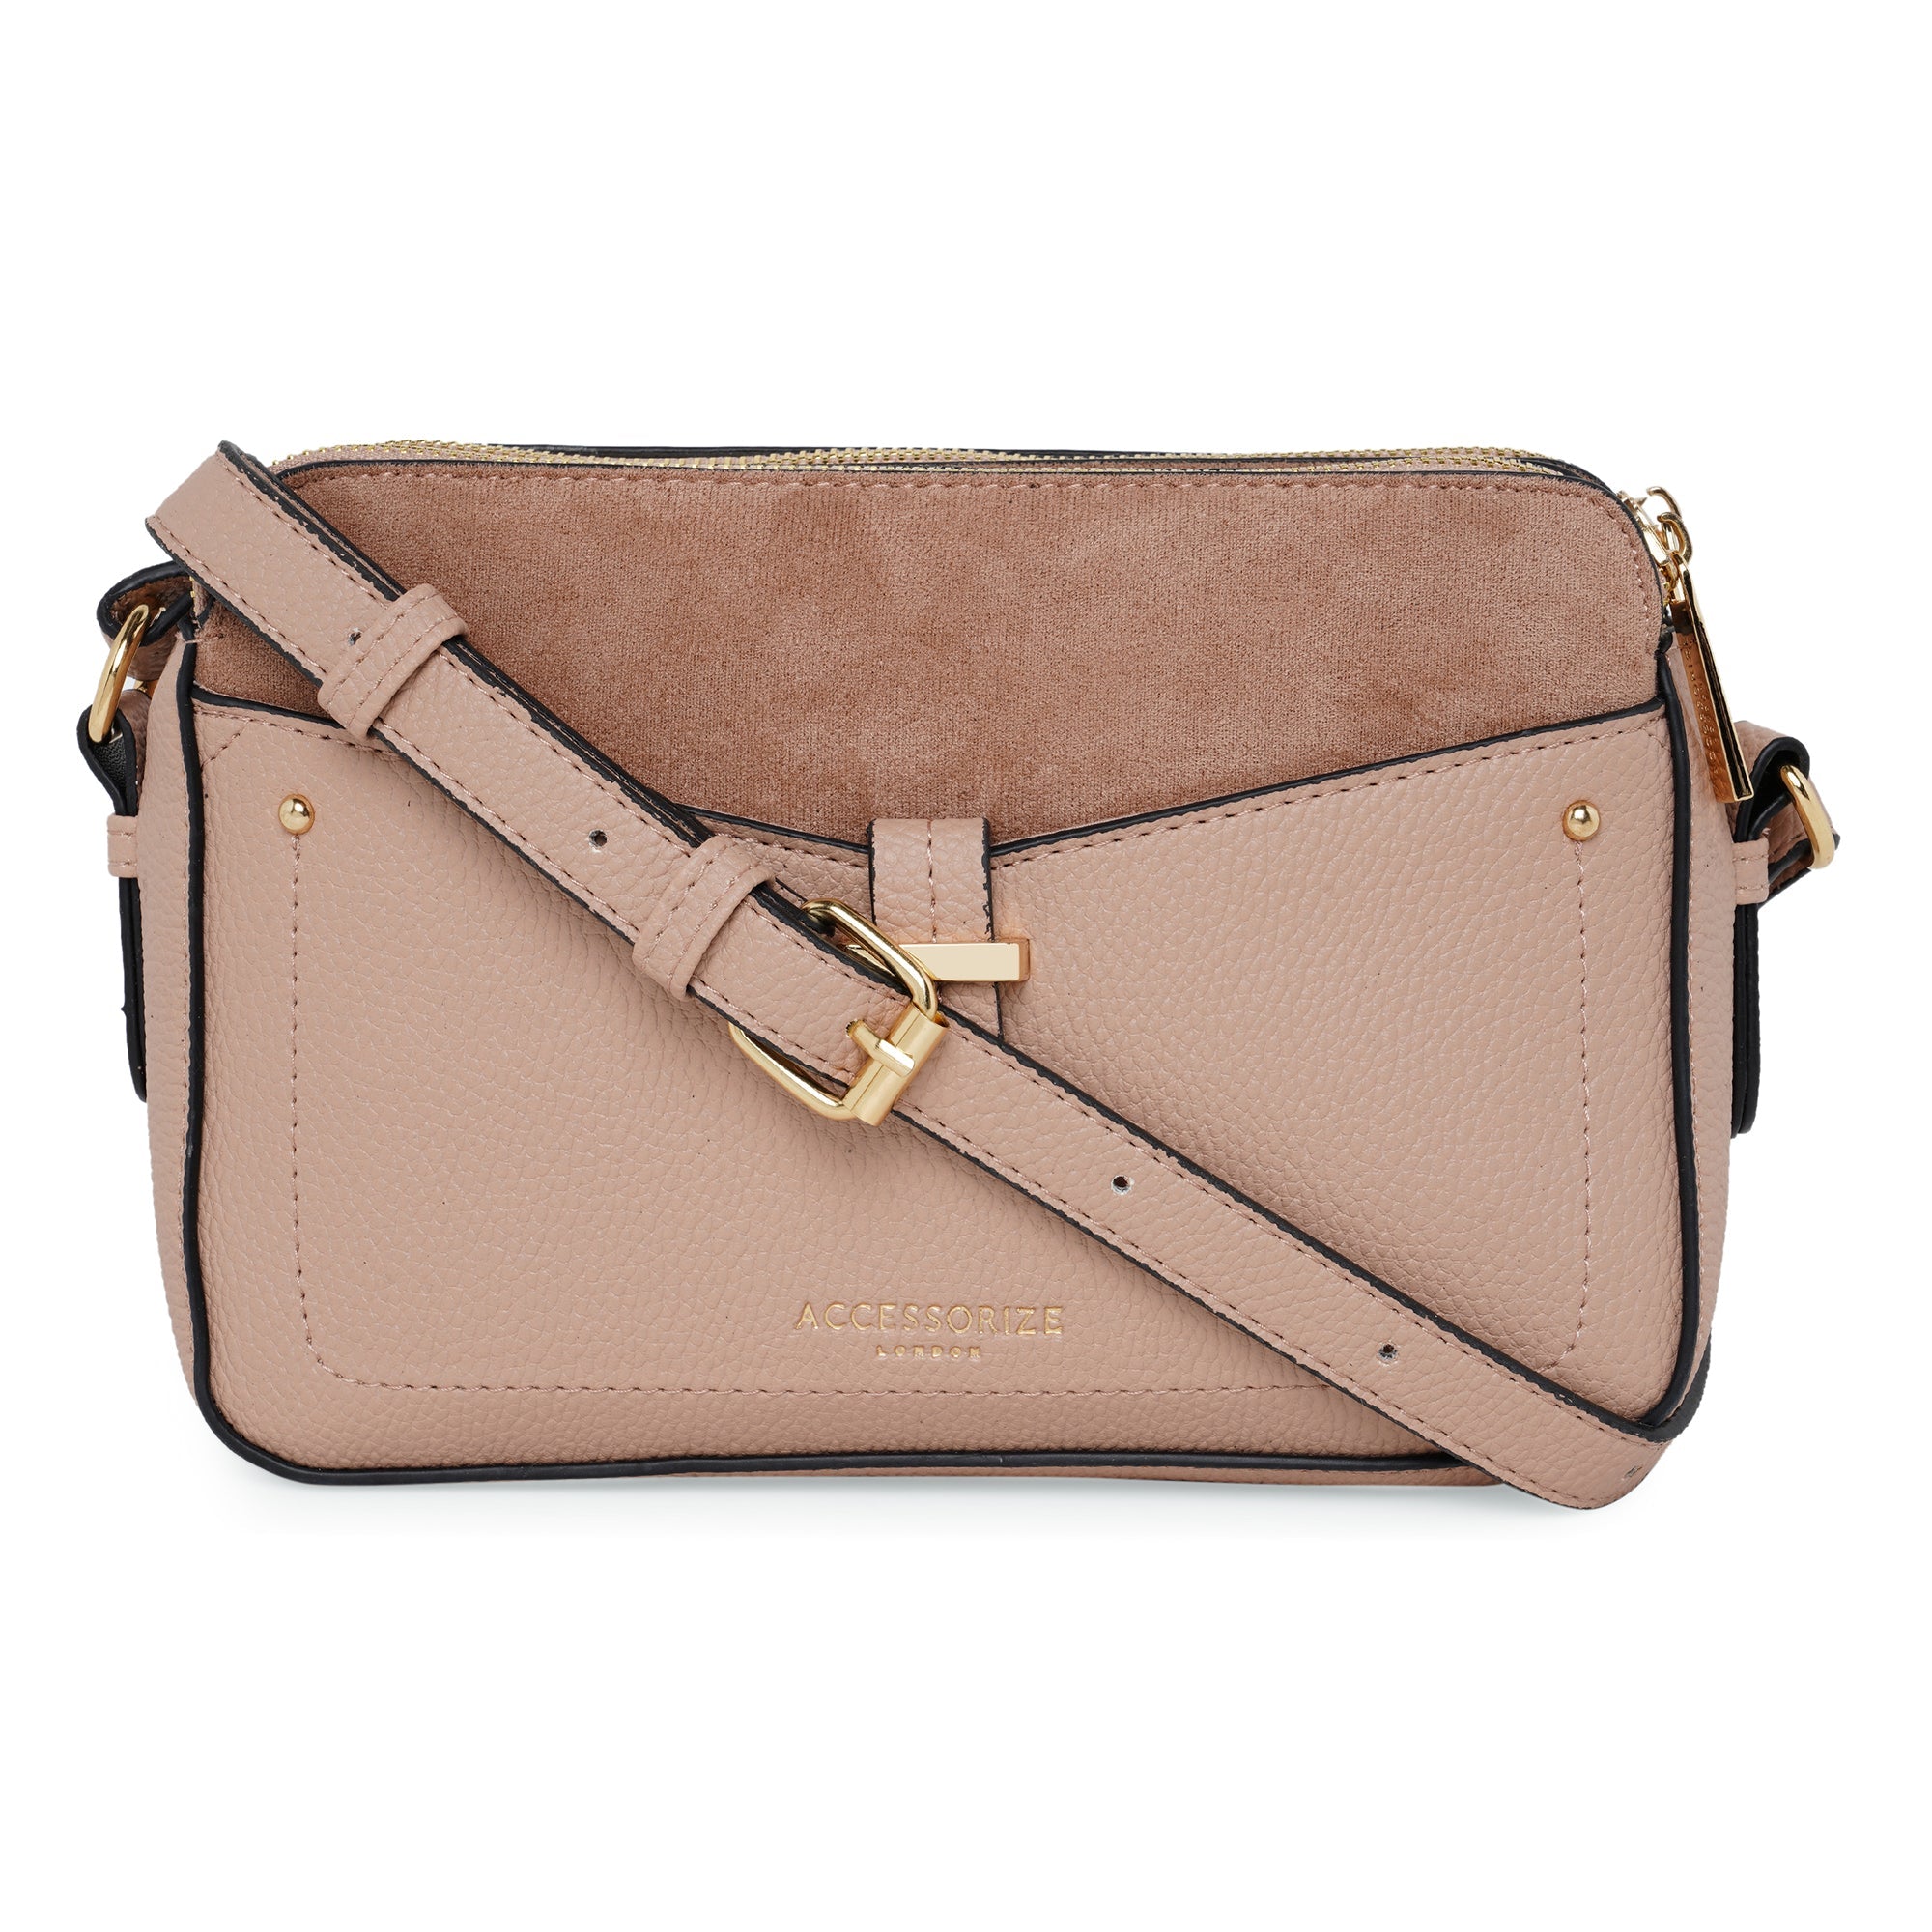 lv sling bag for women crossbody purse